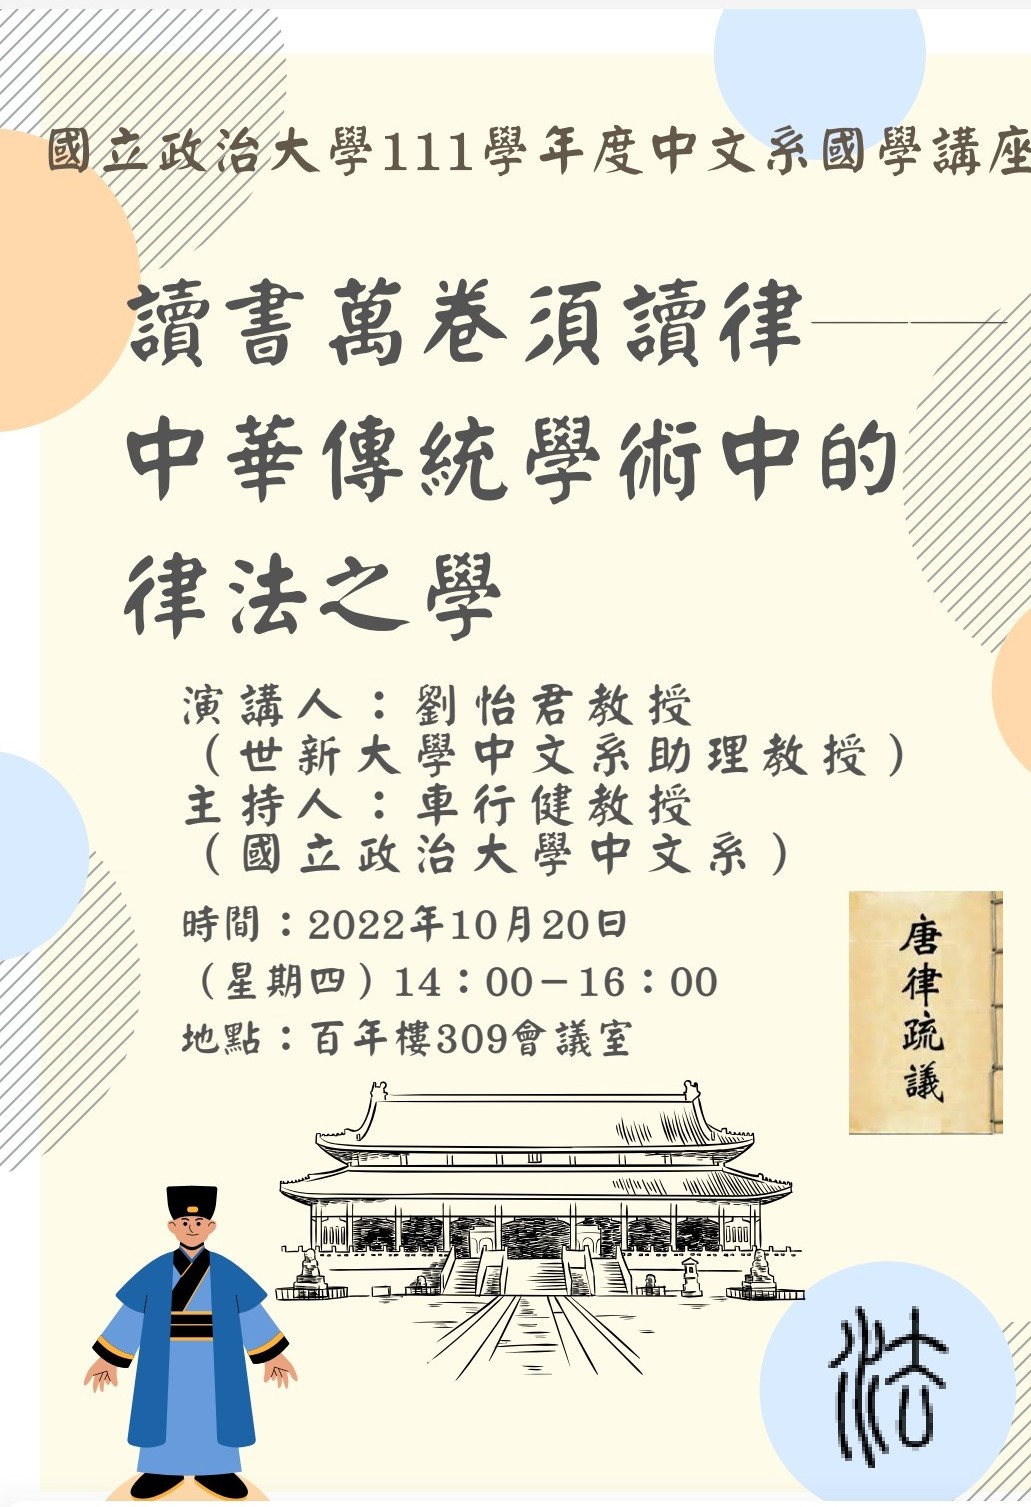 讀書萬卷須讀律--中華傳統學術中的律法之學